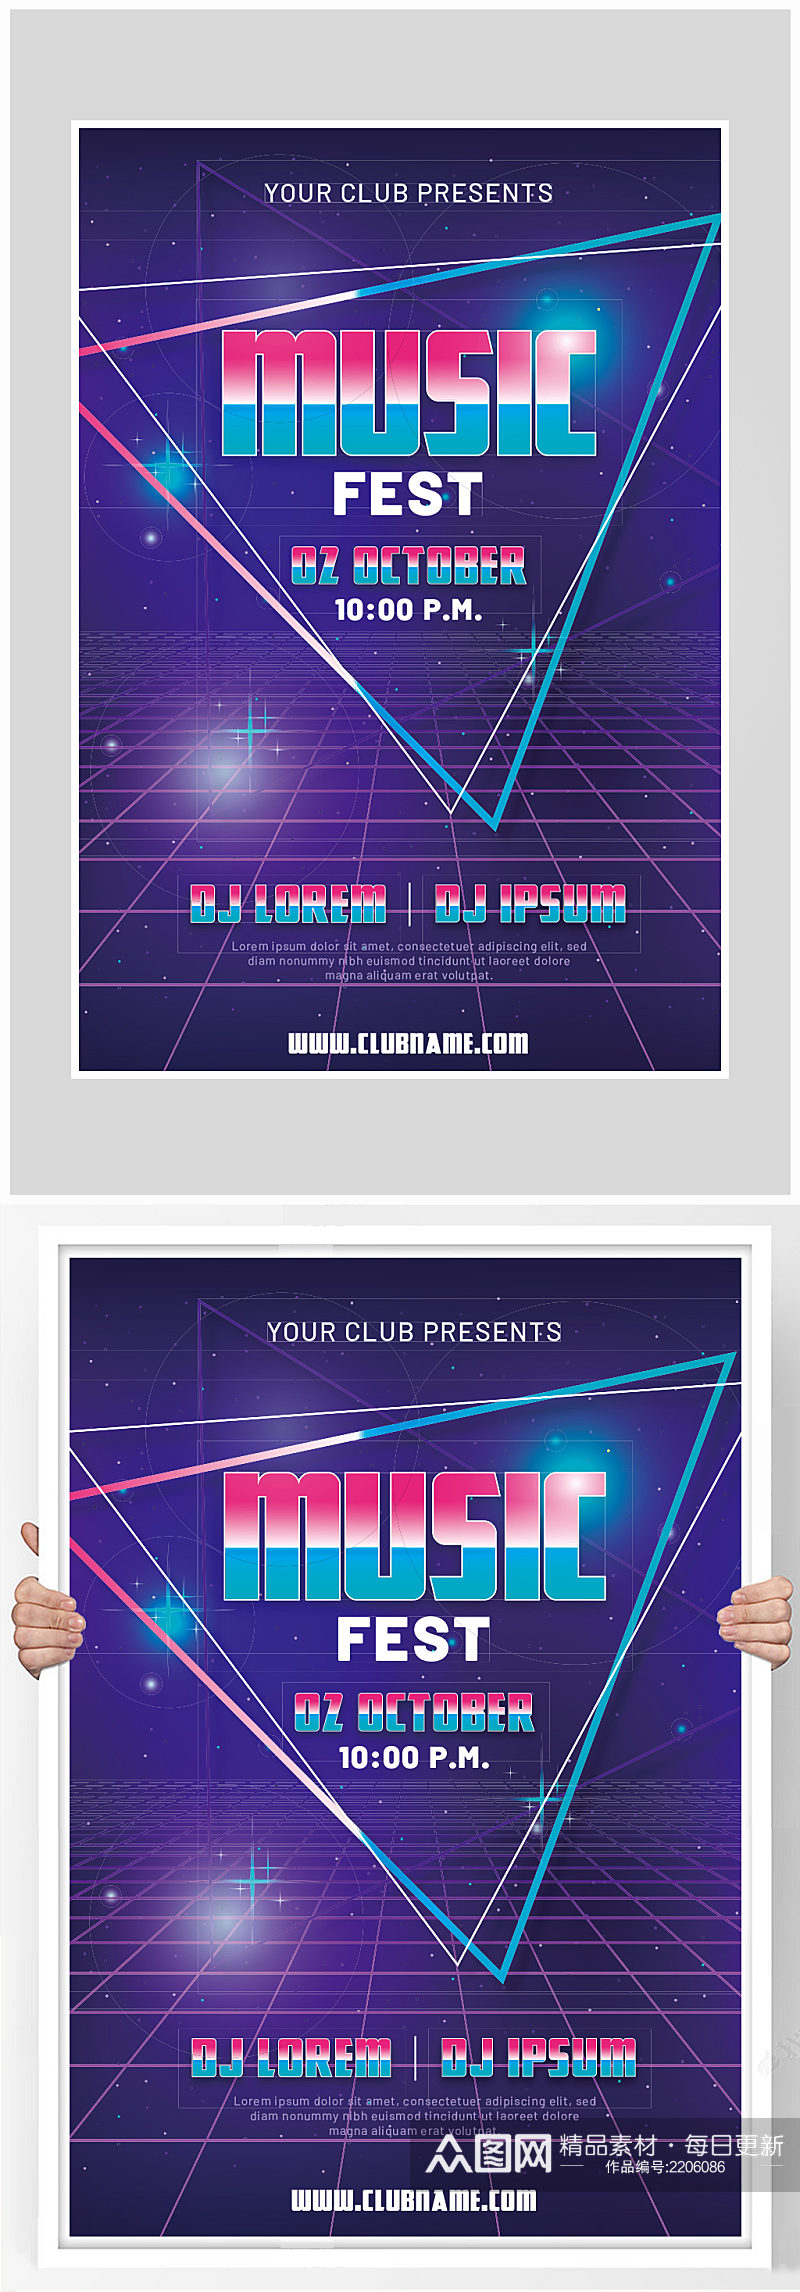 创意矢量炫酷音乐演唱会海报设计素材